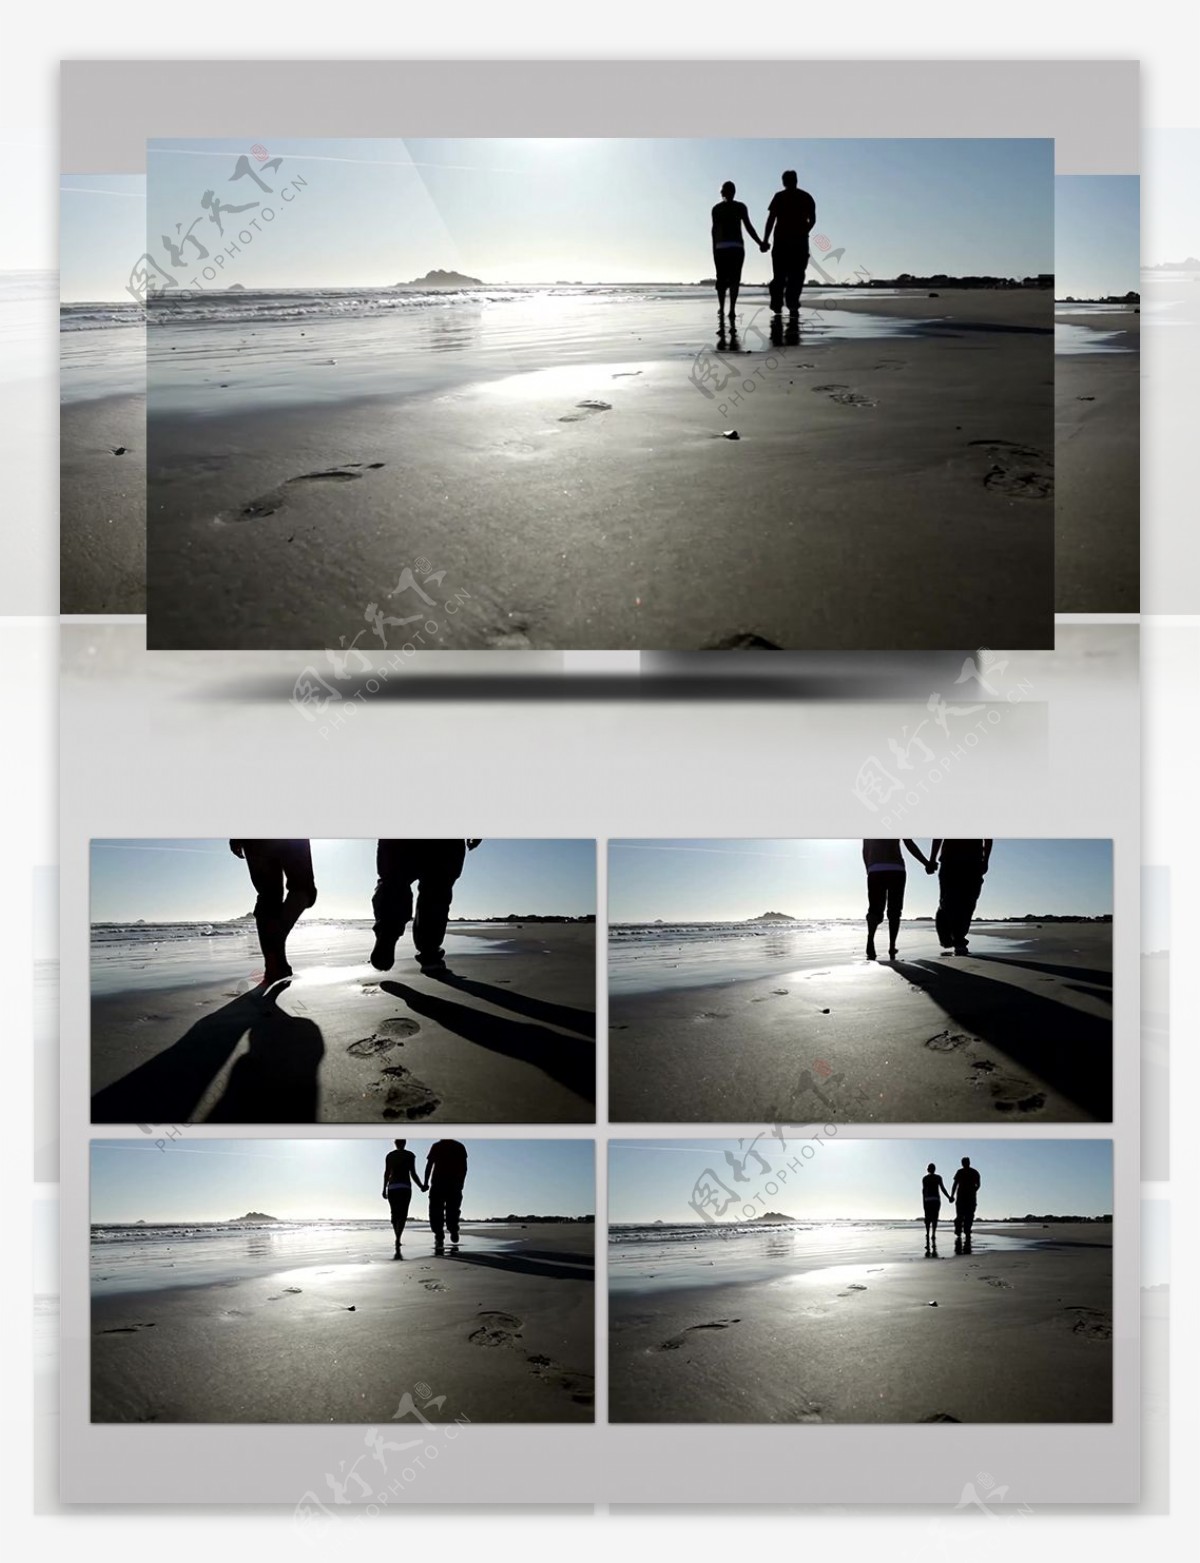 实拍浪漫情侣海边沙滩漫步剪影